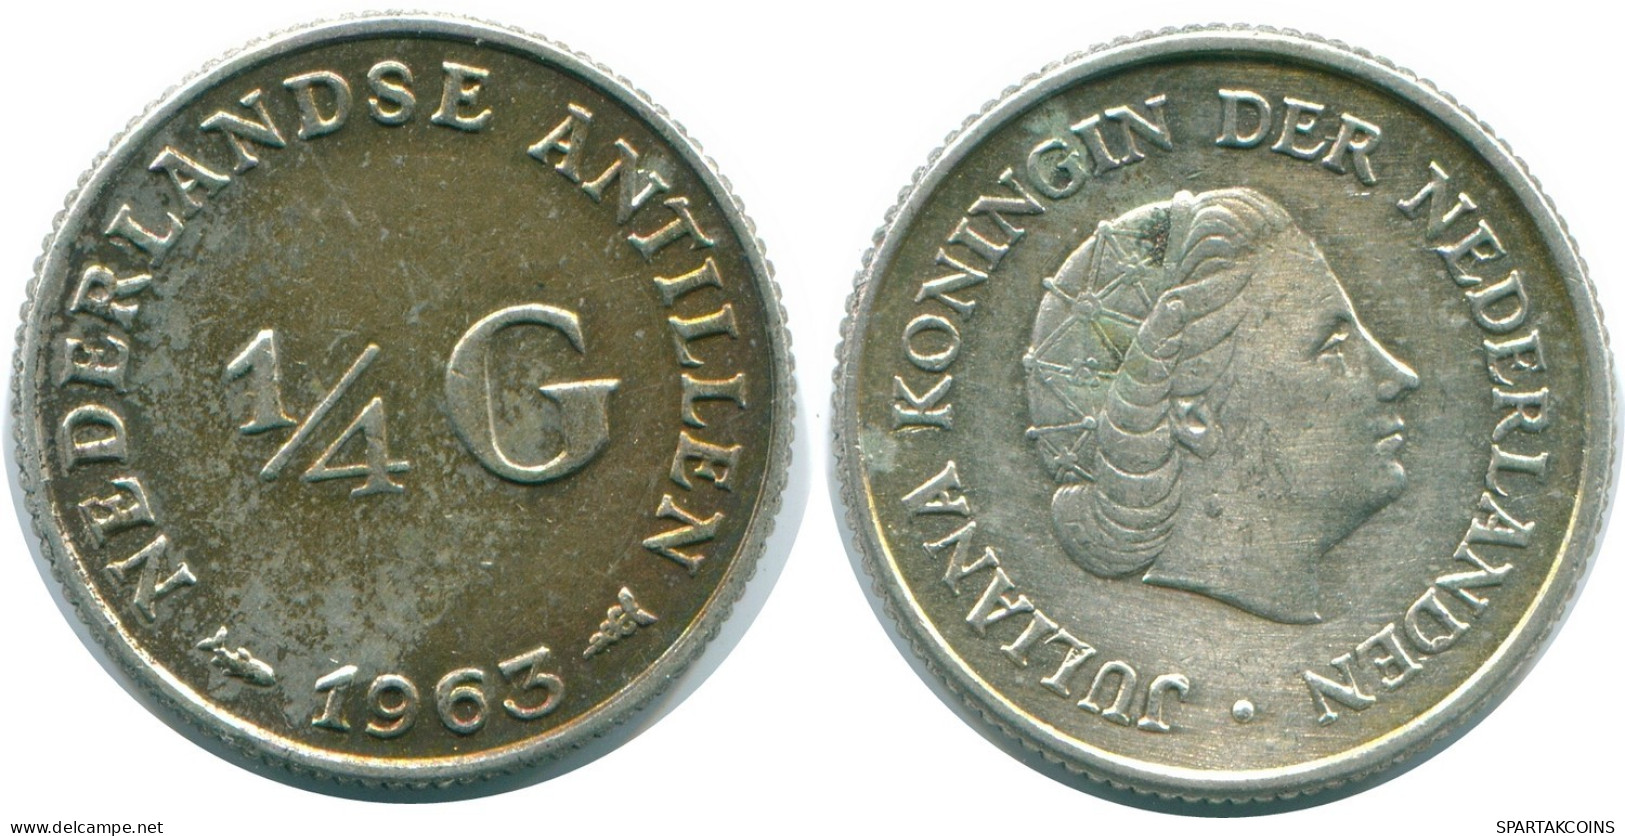 1/4 GULDEN 1963 NIEDERLÄNDISCHE ANTILLEN SILBER Koloniale Münze #NL11238.4.D.A - Niederländische Antillen